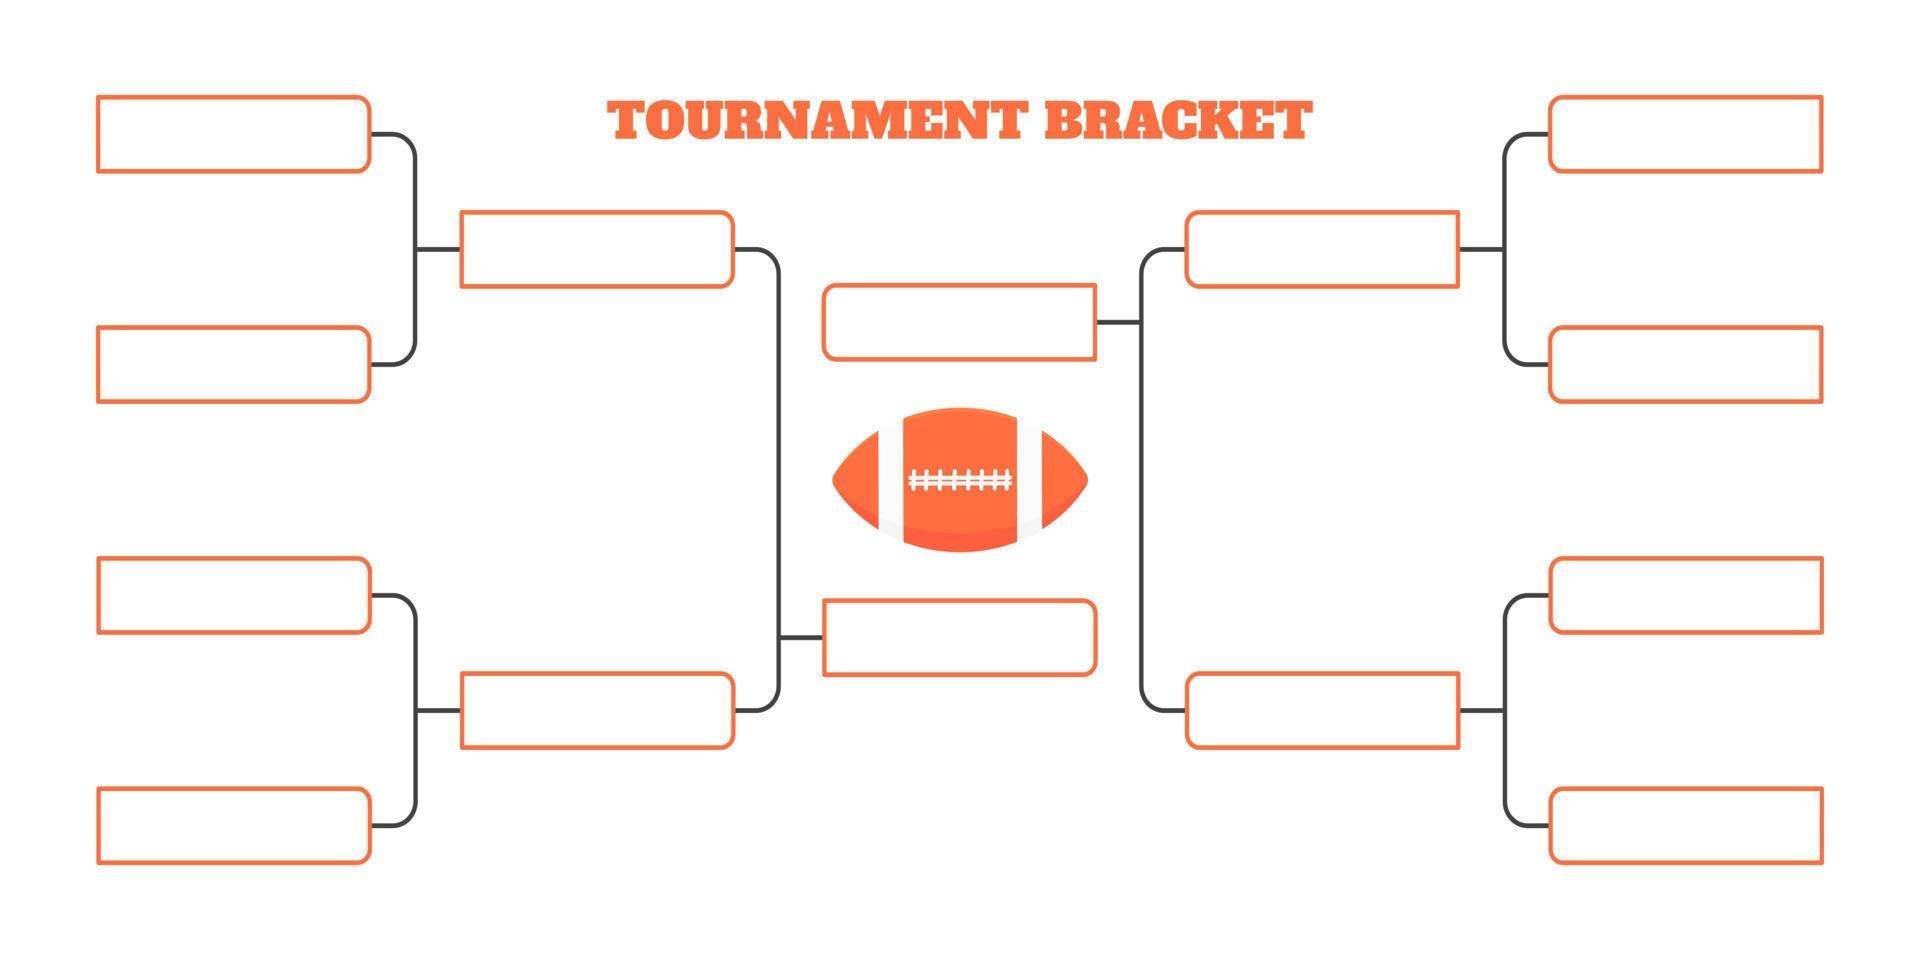 8 american football team toernooi beugel kampioenschap sjabloon vlakke stijl ontwerp vectorillustratie vector